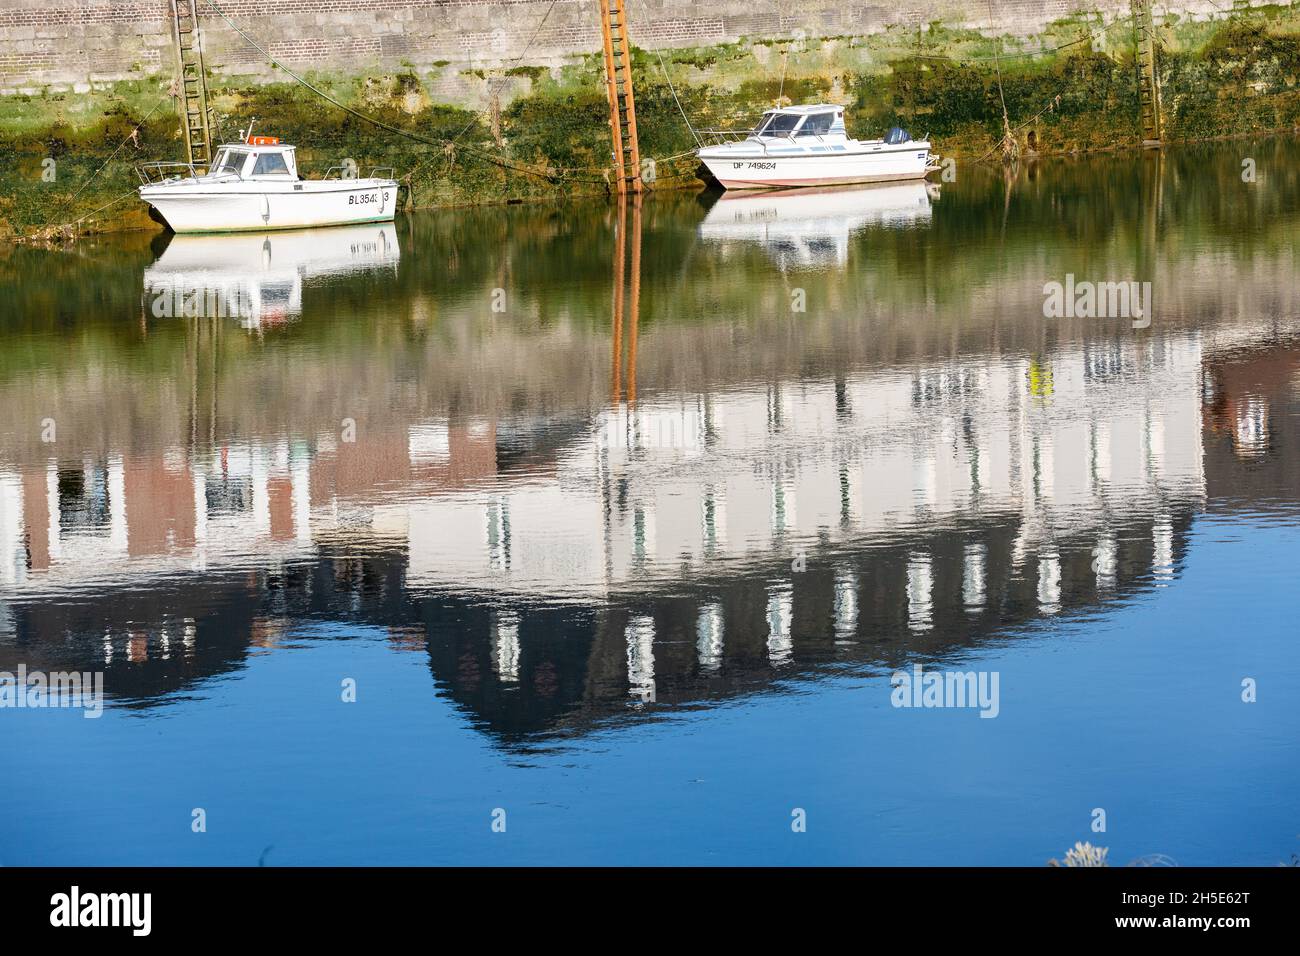 Petits bateaux de pêche amarrés à marée basse.Réflexions de maisons construites sur le quai.Saint-Valery, Baie de somme, France Banque D'Images